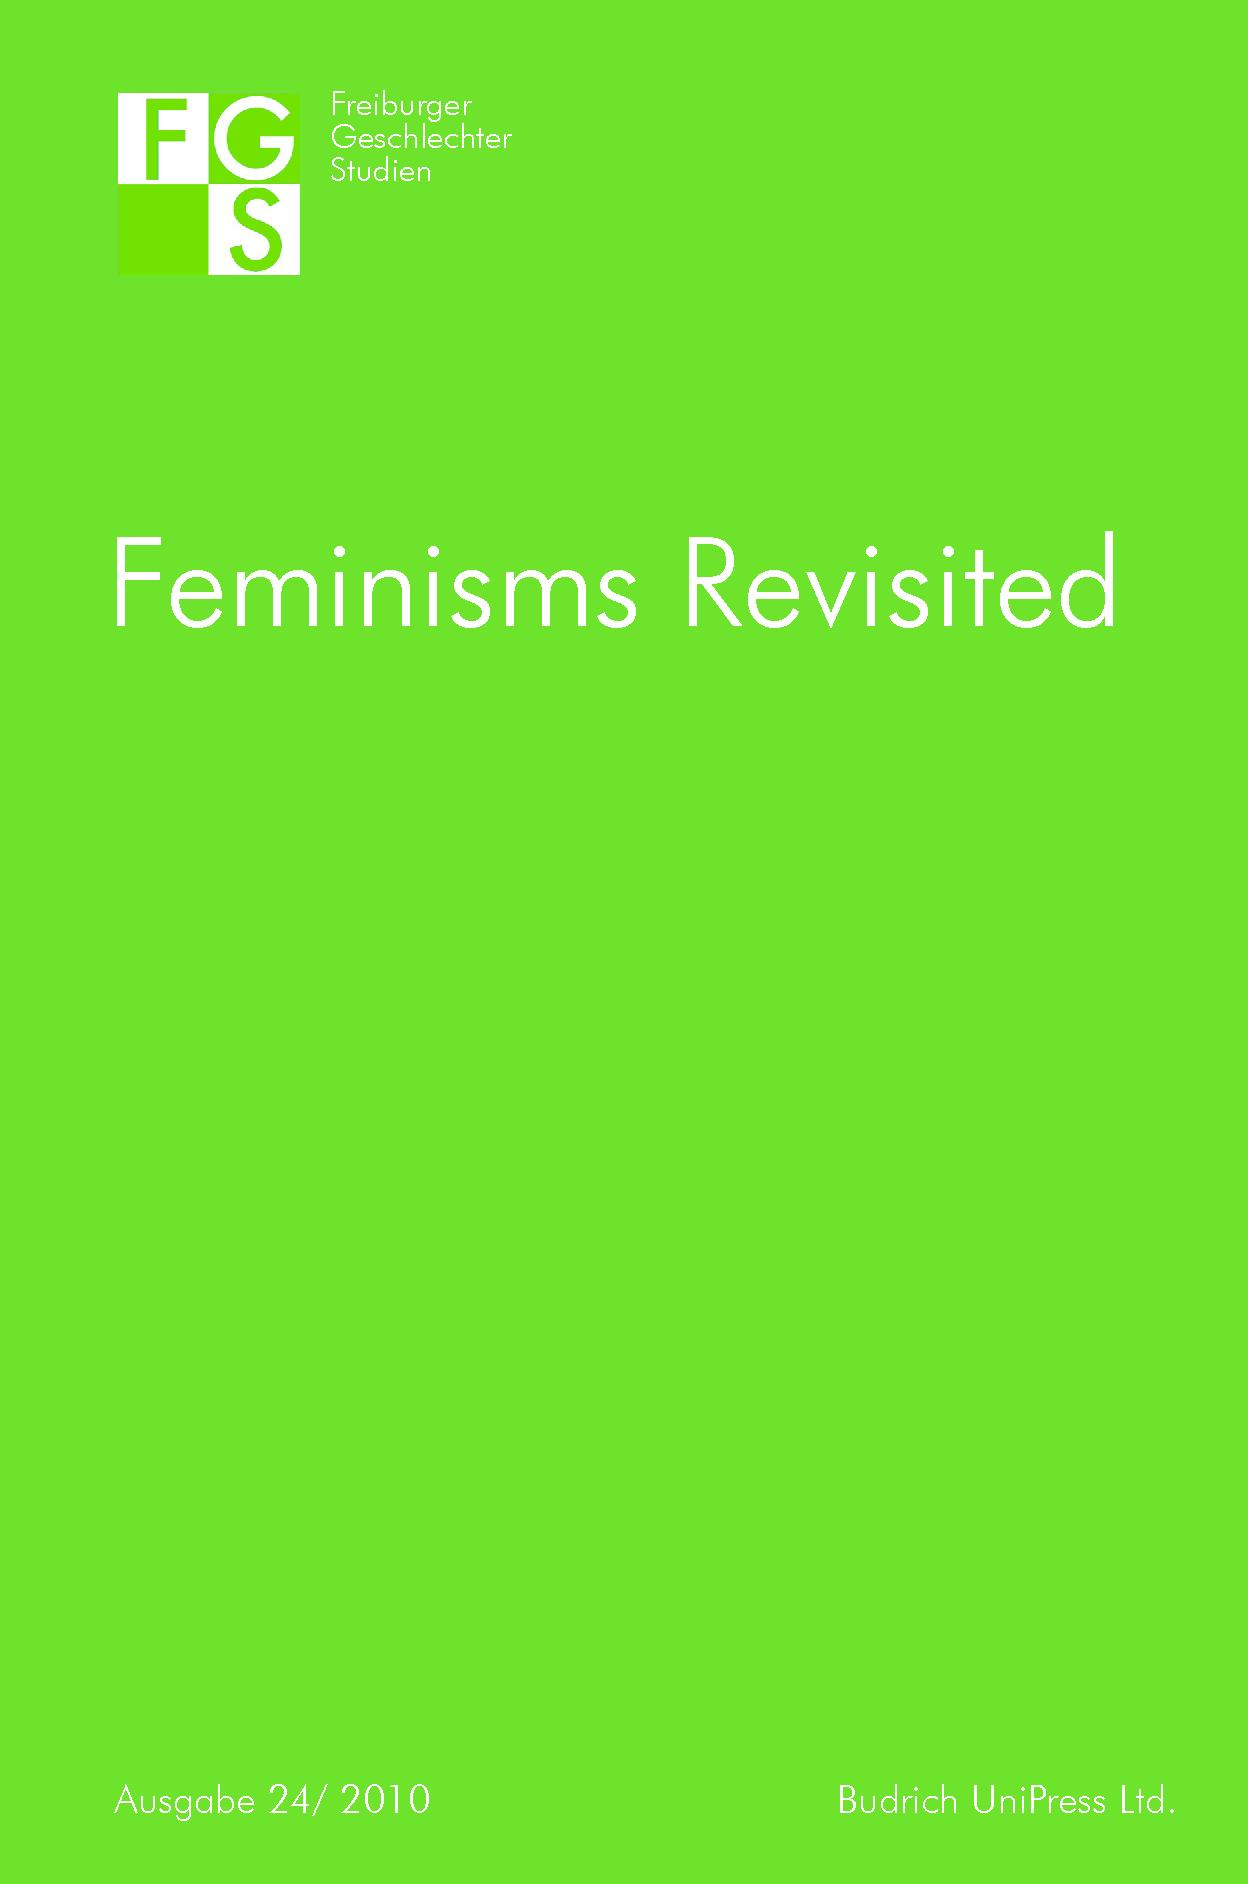 2010_Feminisms.jpg